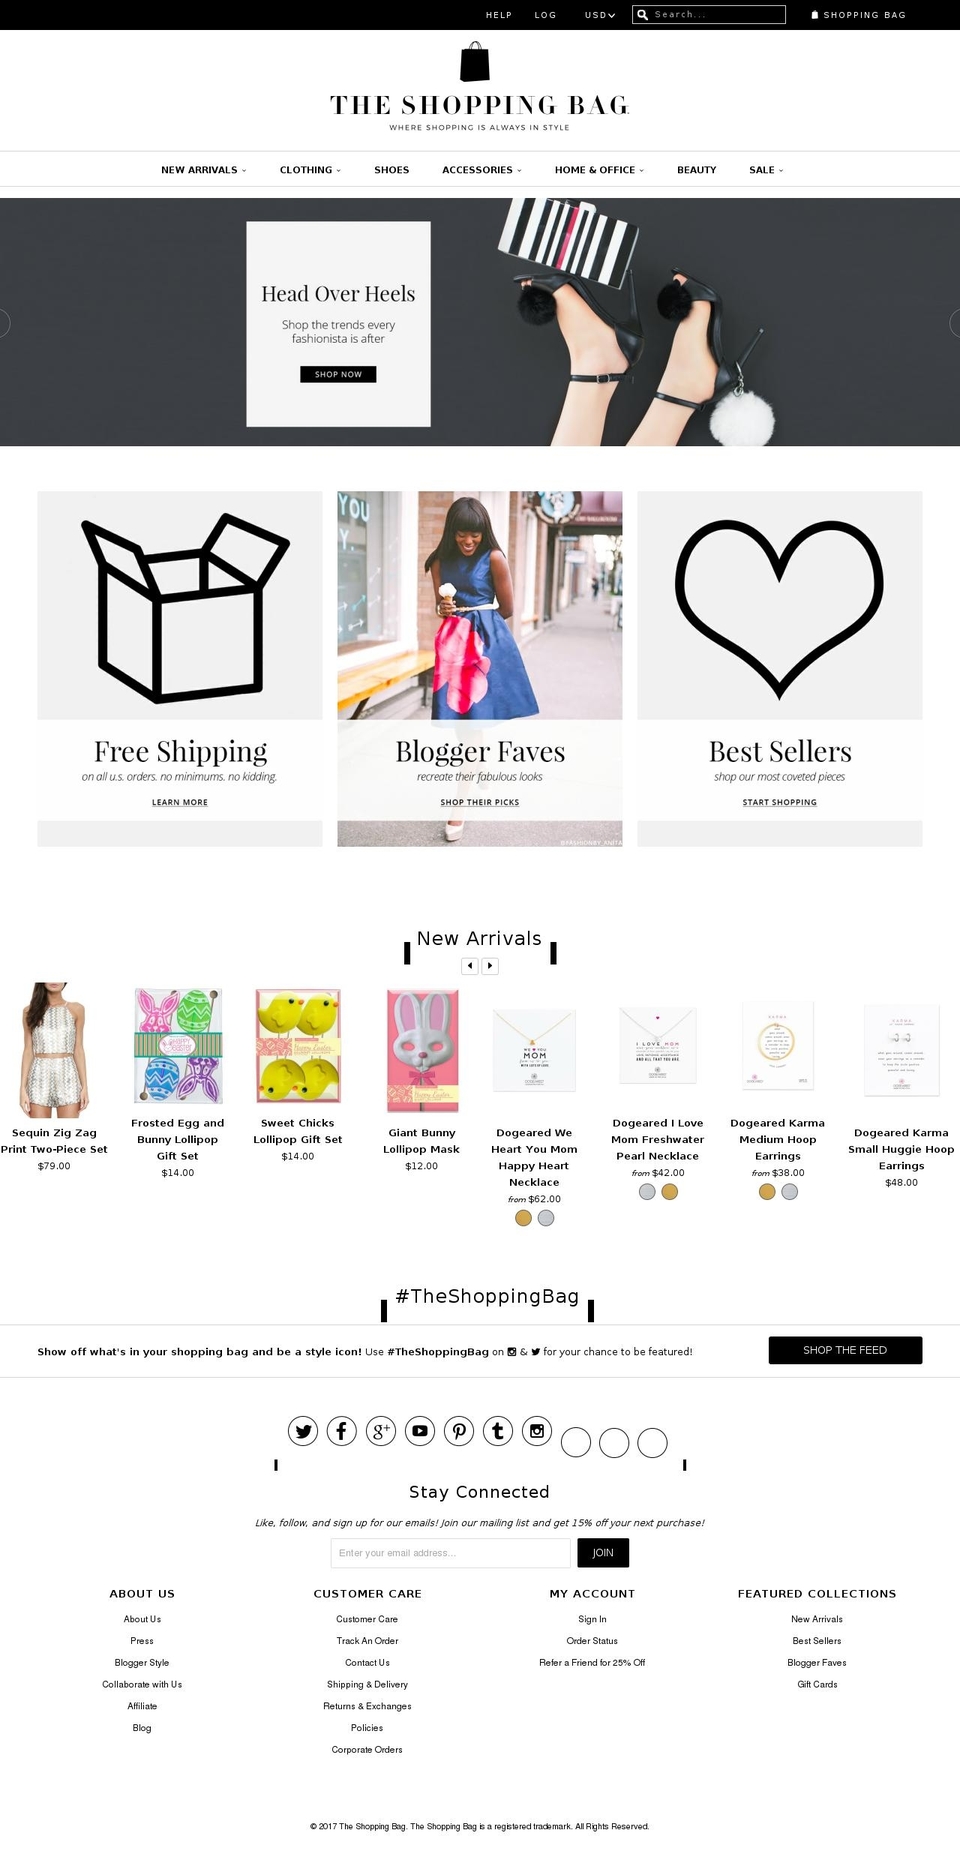 shoptheshoppingbag.com shopify website screenshot